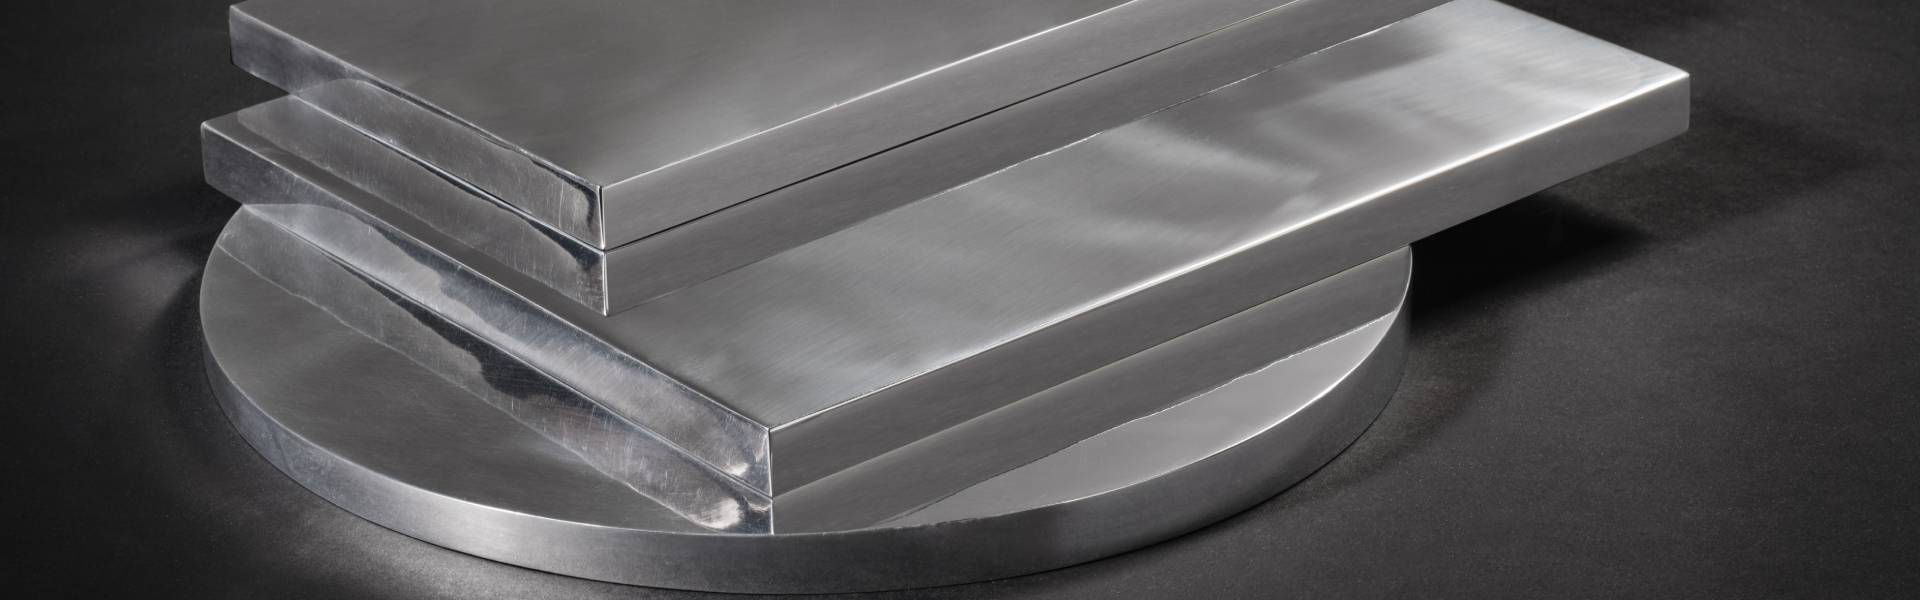 Piastre e Placche - Vendita alluminio: profili, tubi, lastre e barre  alluminio.